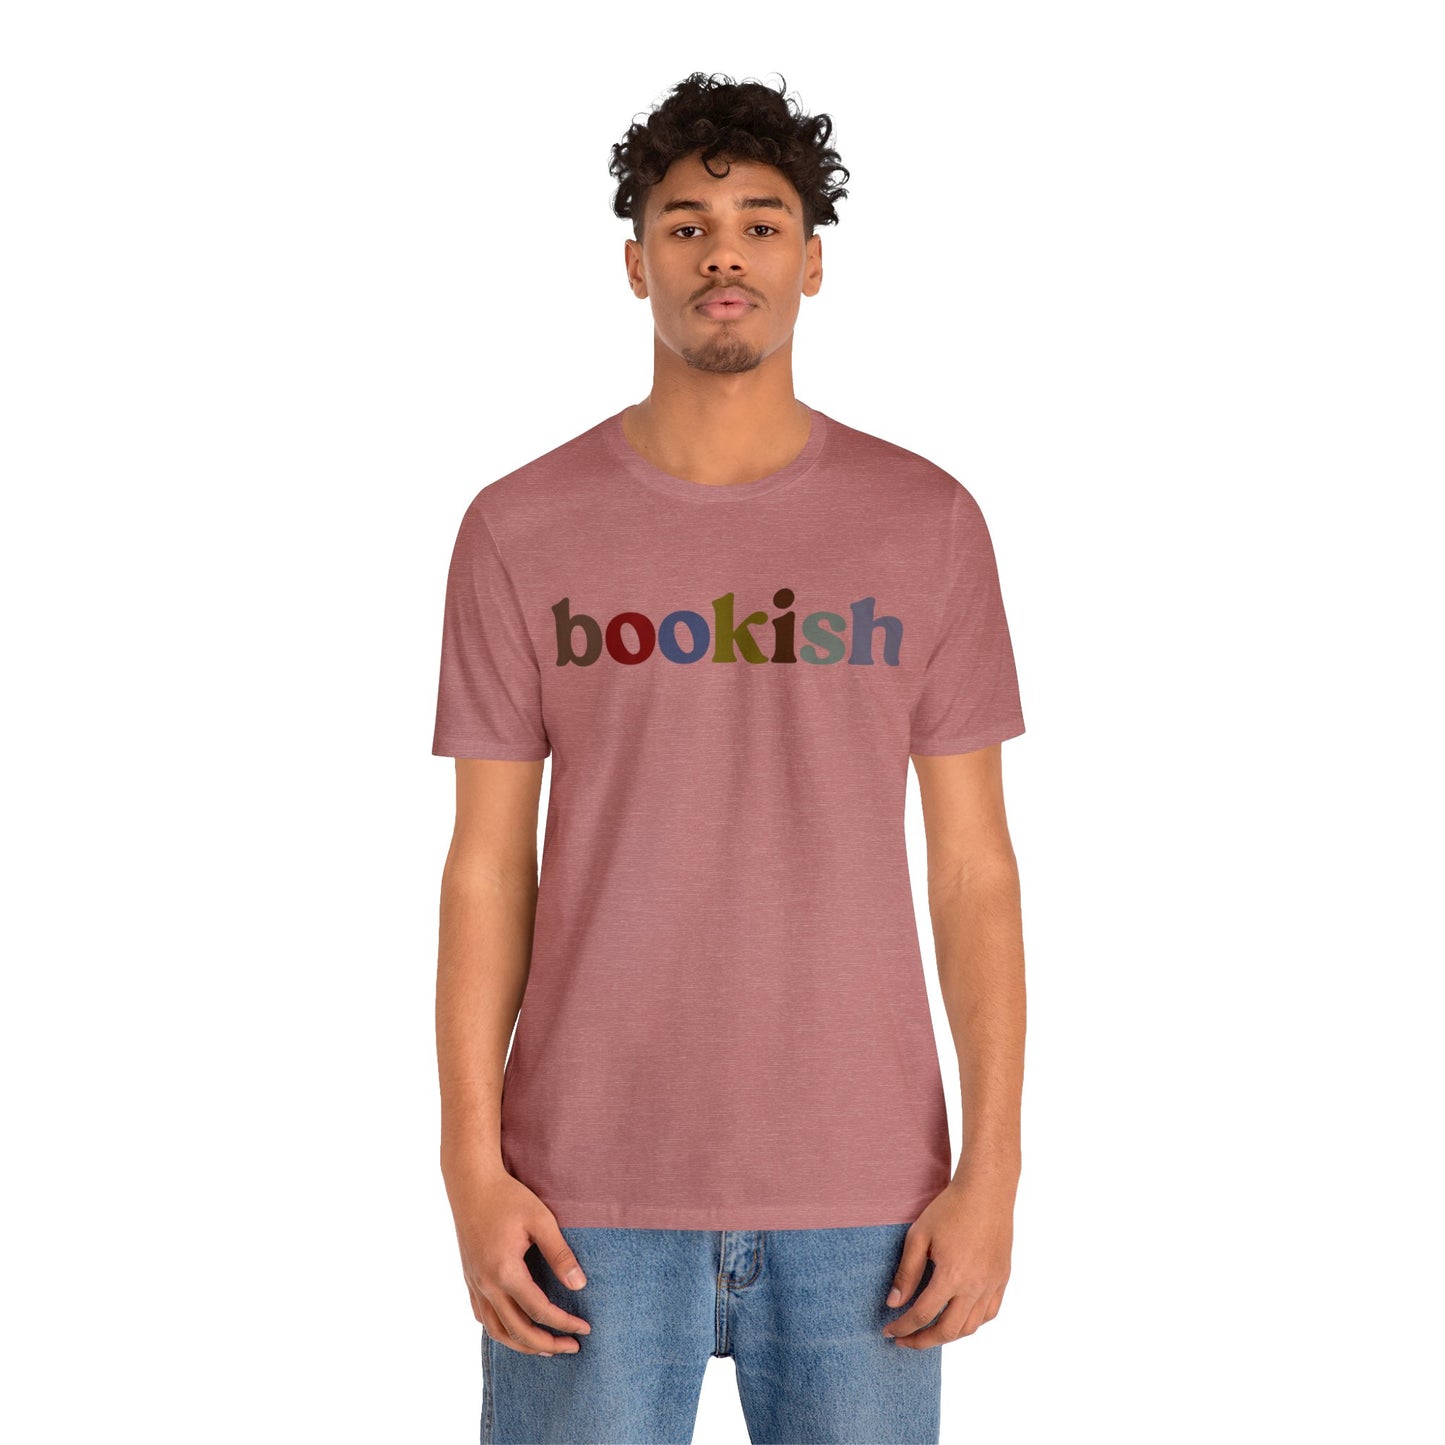 Bookish Shirt, Book Lovers Club Shirt, Bookworm Era Shirt, Librarian Shirt, Teacher Shirt, Book Nerd Shirt, Book Club Shirt, T1314